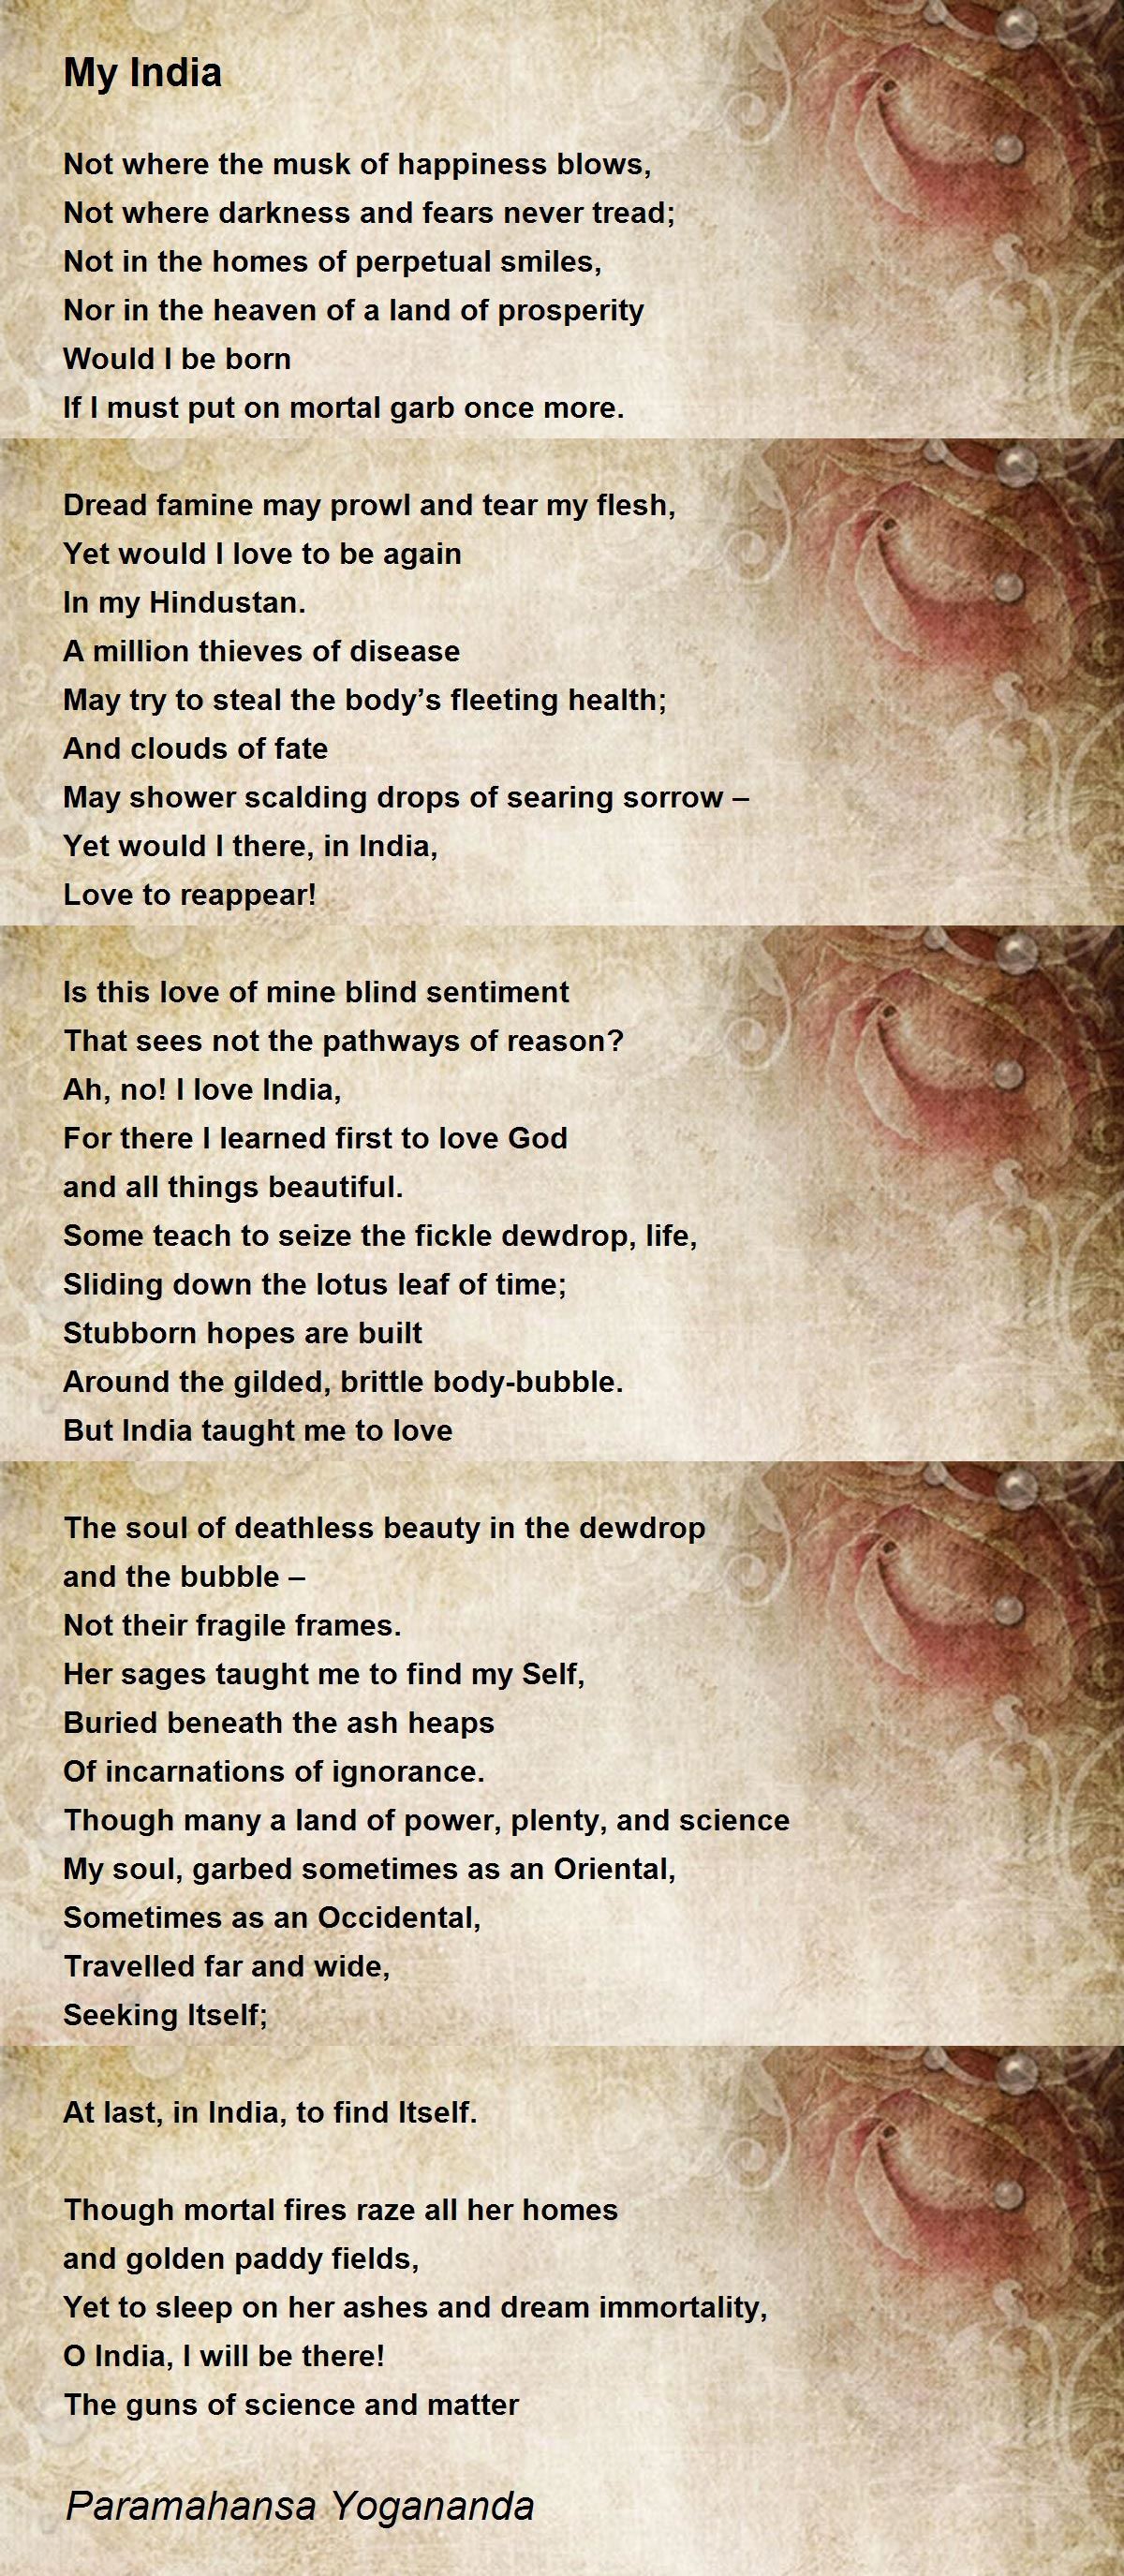 My India Poem by Paramahansa Yogananda - Poem Hunter